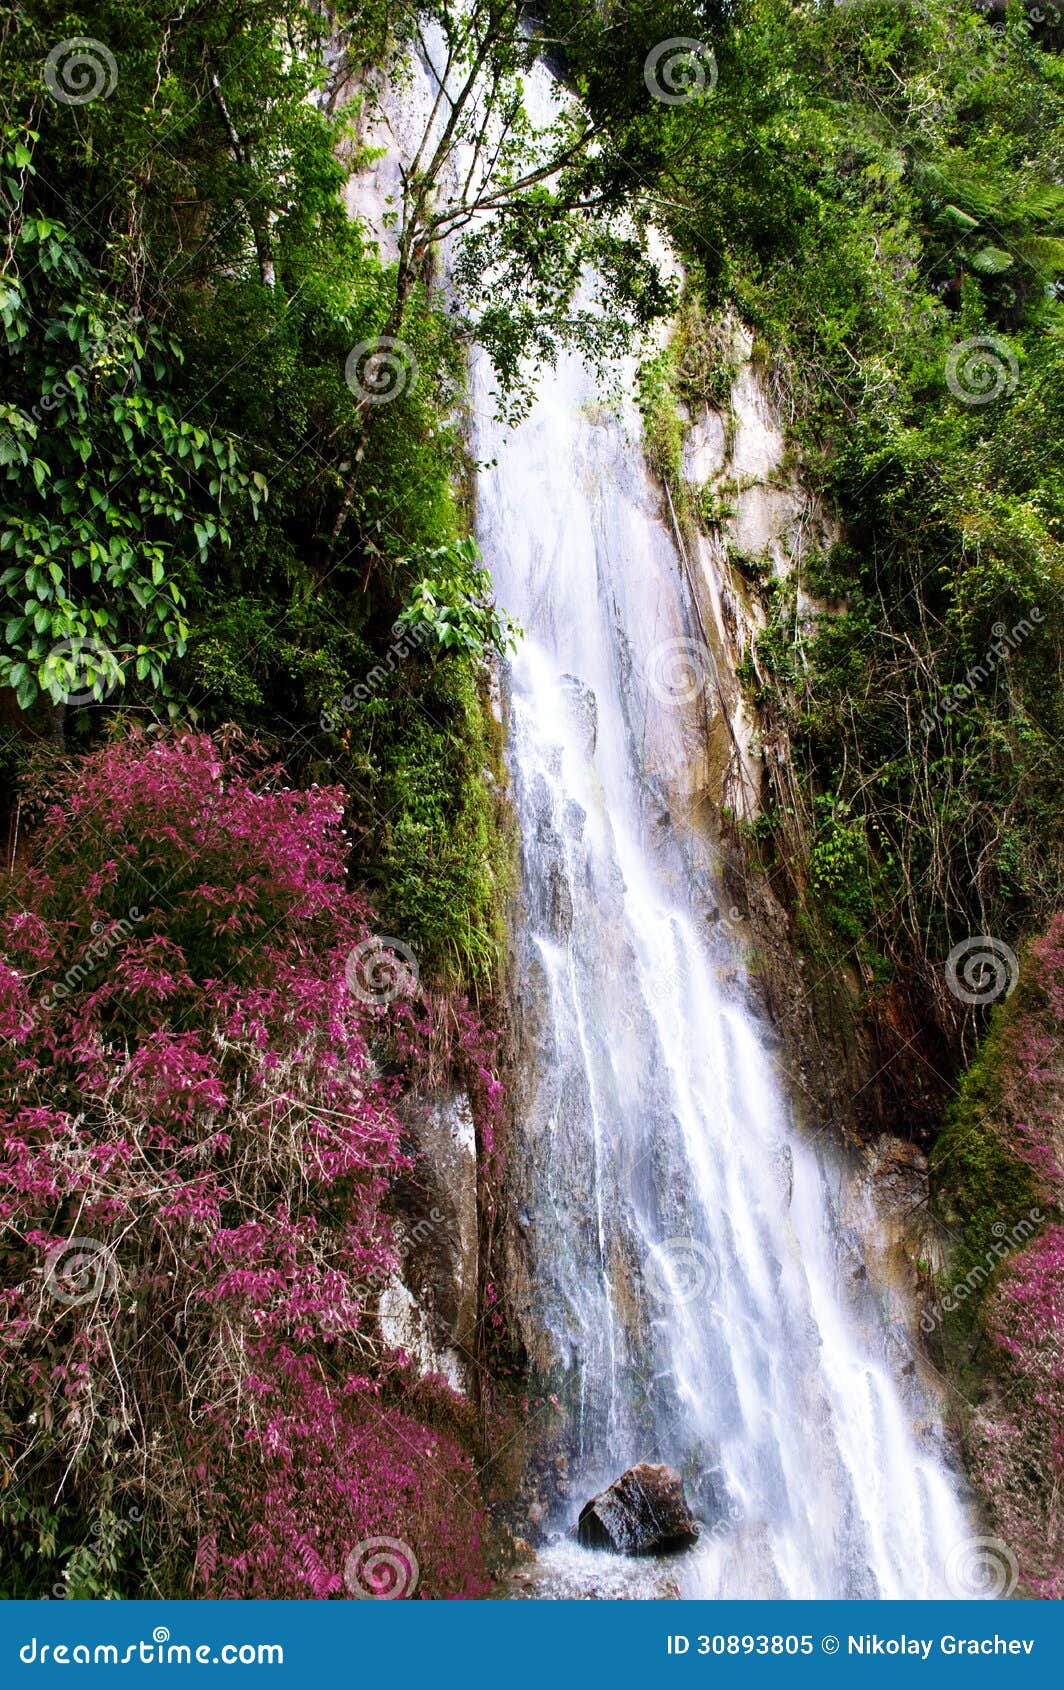 Download this Waterfall Near Tomok Village Samosir Island Lake Toba North Sumatra picture